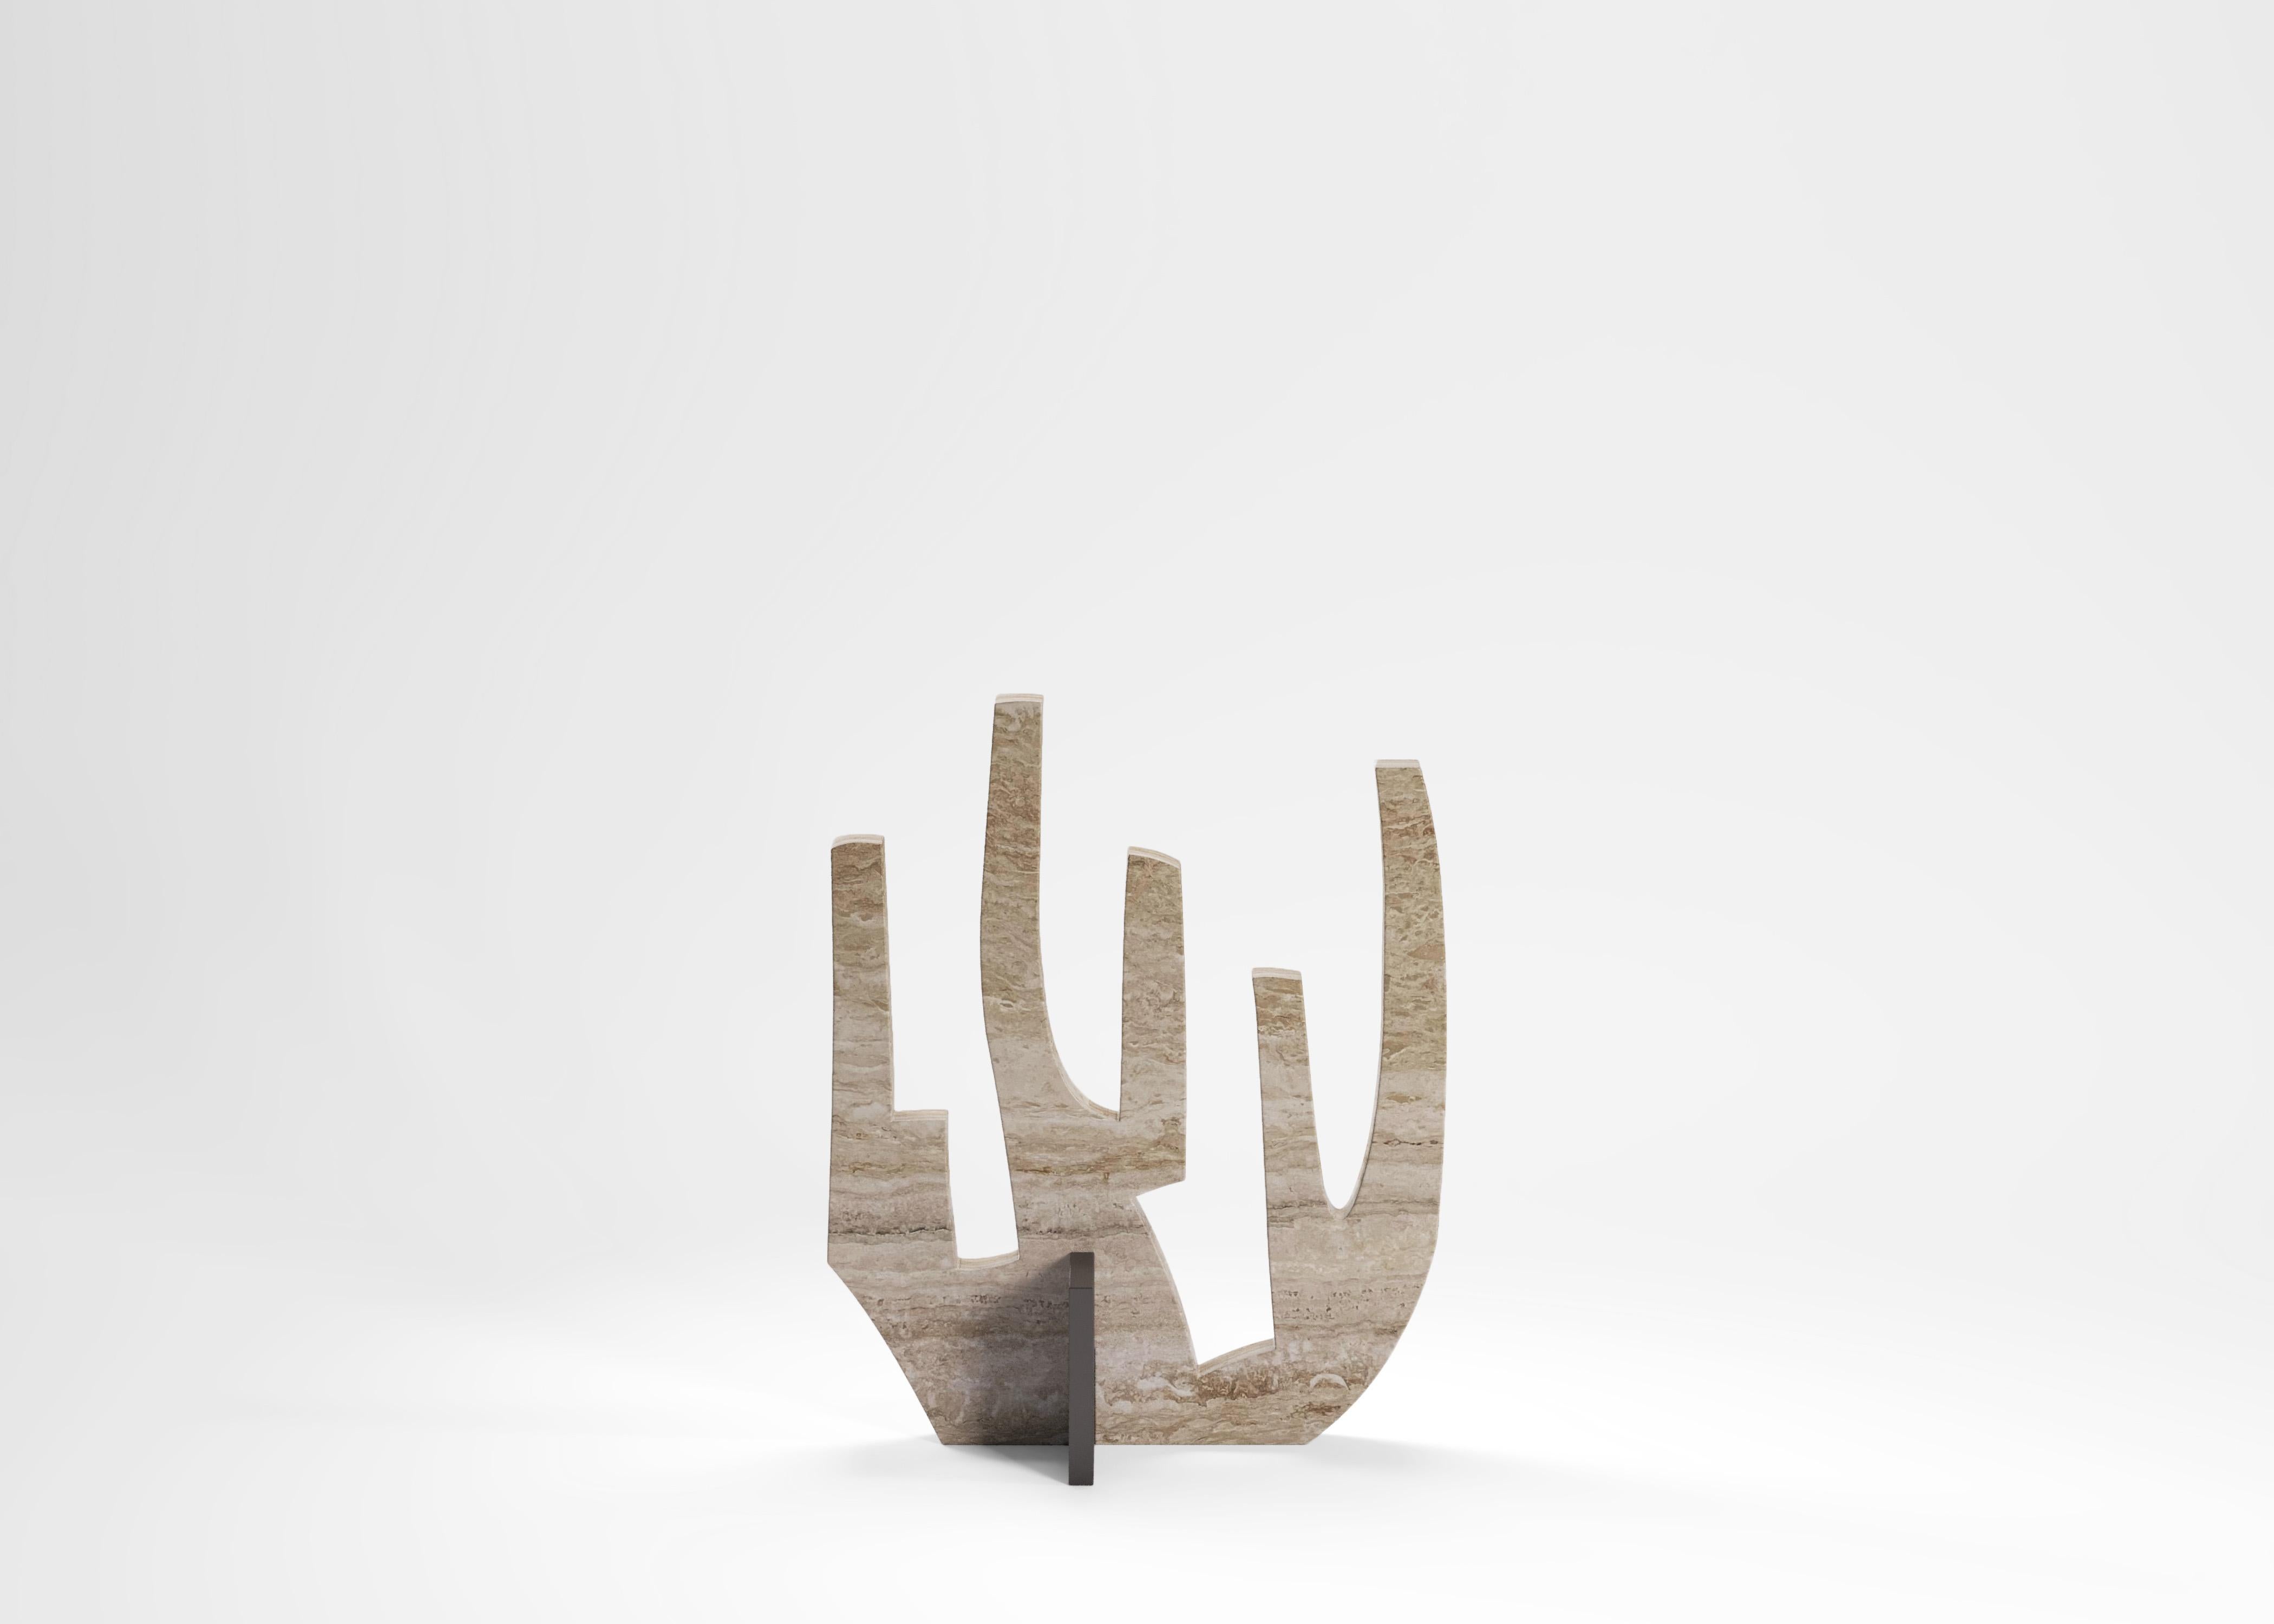 Contemporary Coral Sculpture by Edizione Limitata